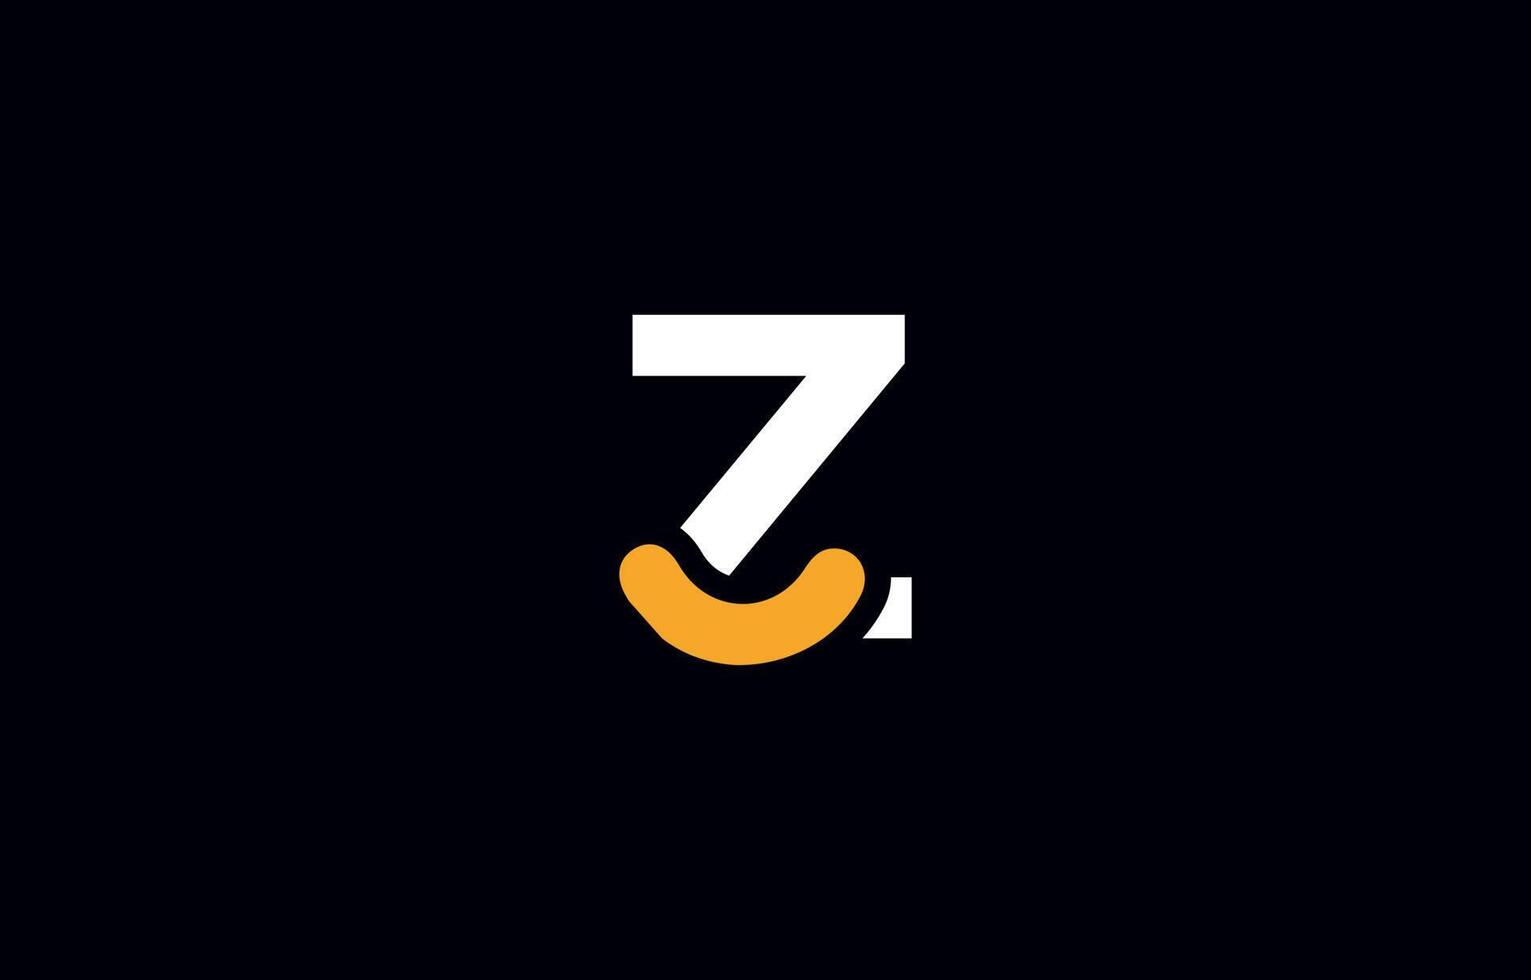 modelo de vetor de design de logotipo de letra z inicial. monograma e ilustração criativa do ícone das letras do alfabeto